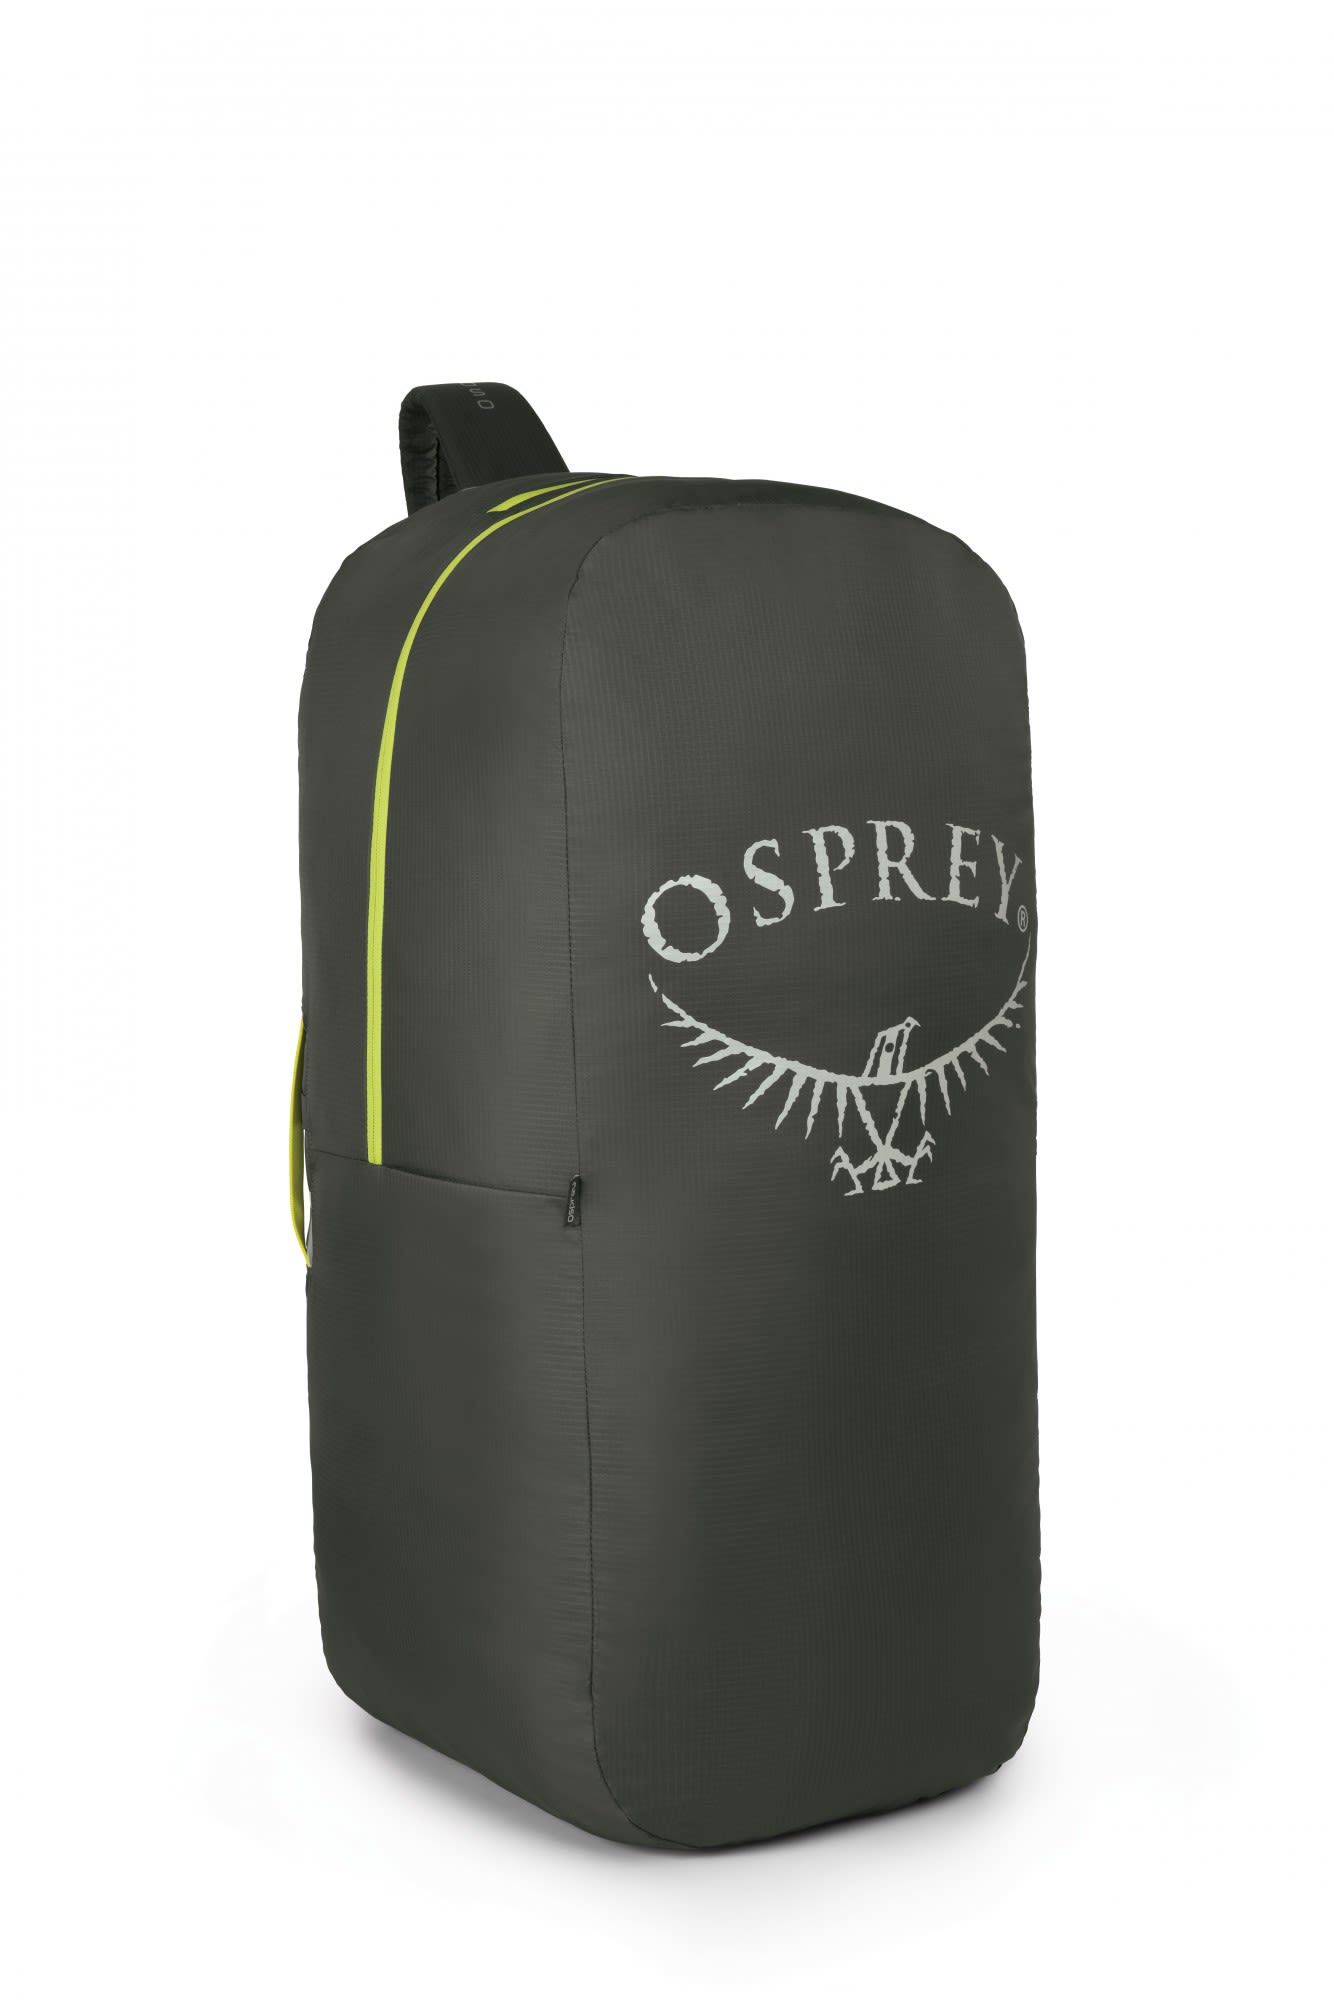 Osprey Airporter Grau- Alpin- und Trekkingruckscke- Grsse One Size - Farbe Shadow Grey